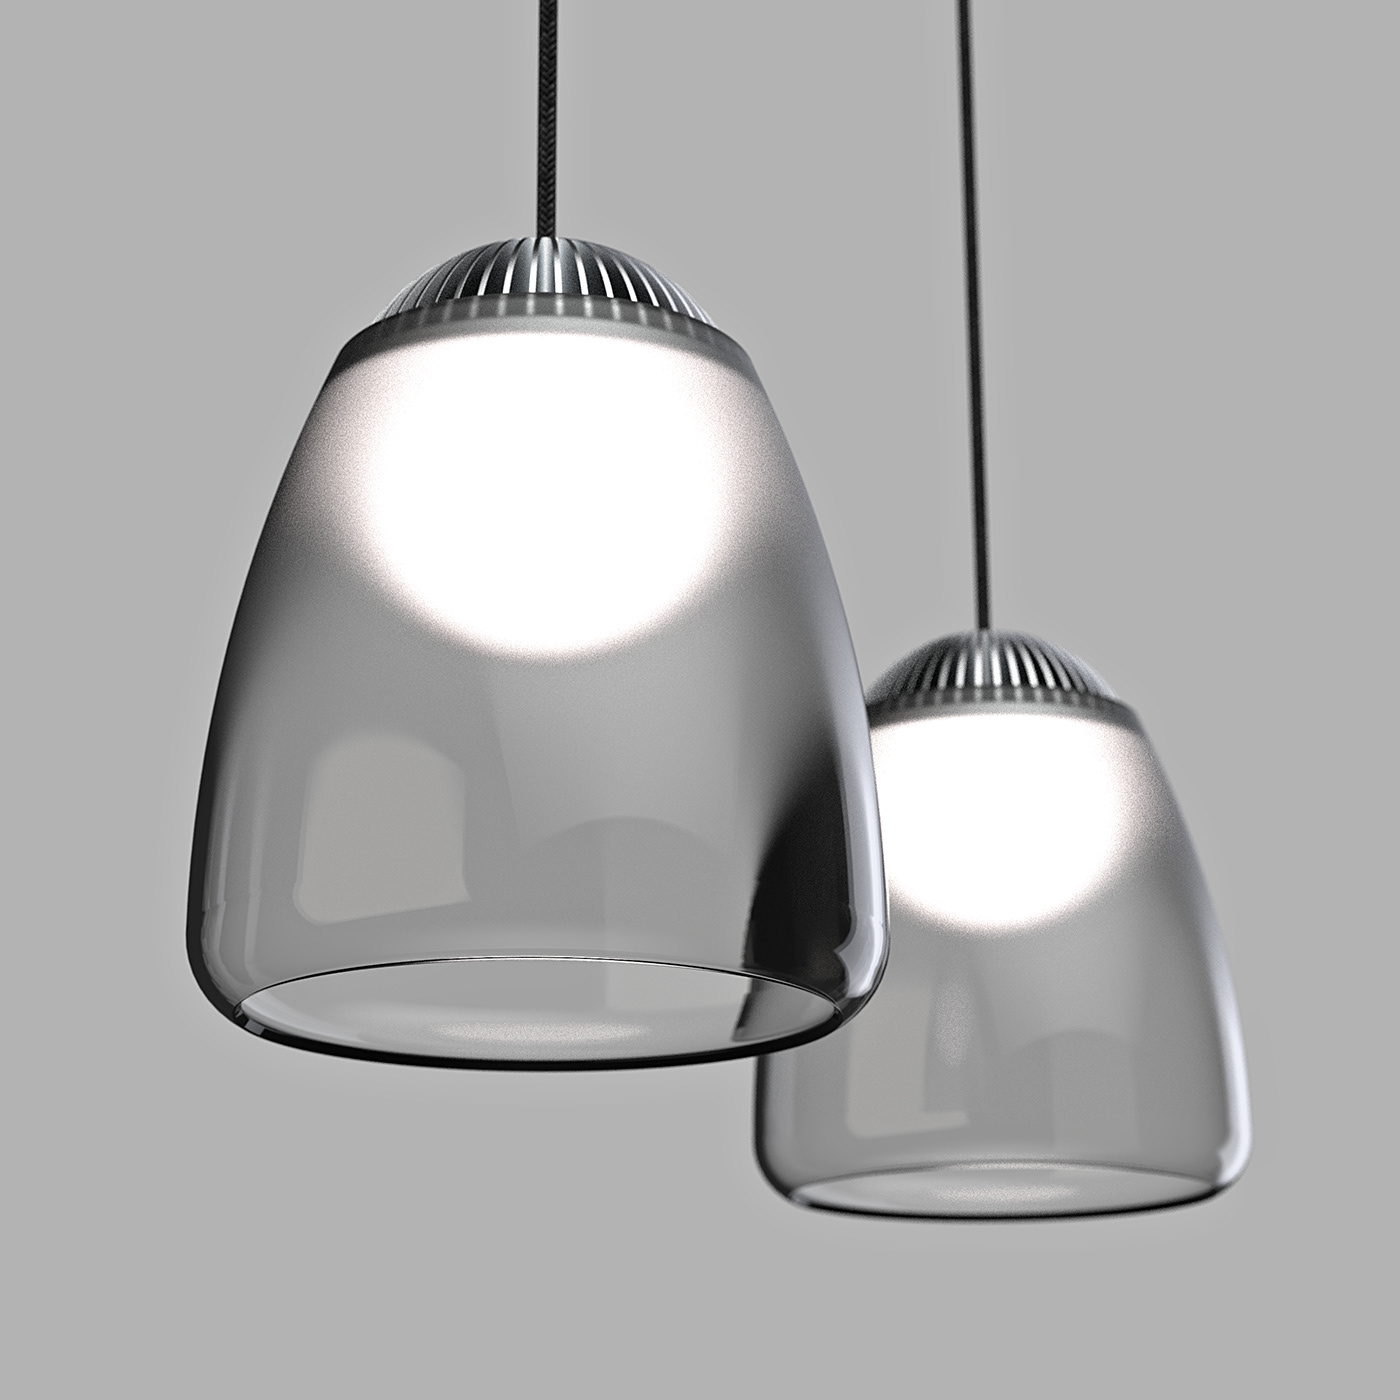 Renderweekly Render rendering keyshot pendantlight light Lamp CGI cmf